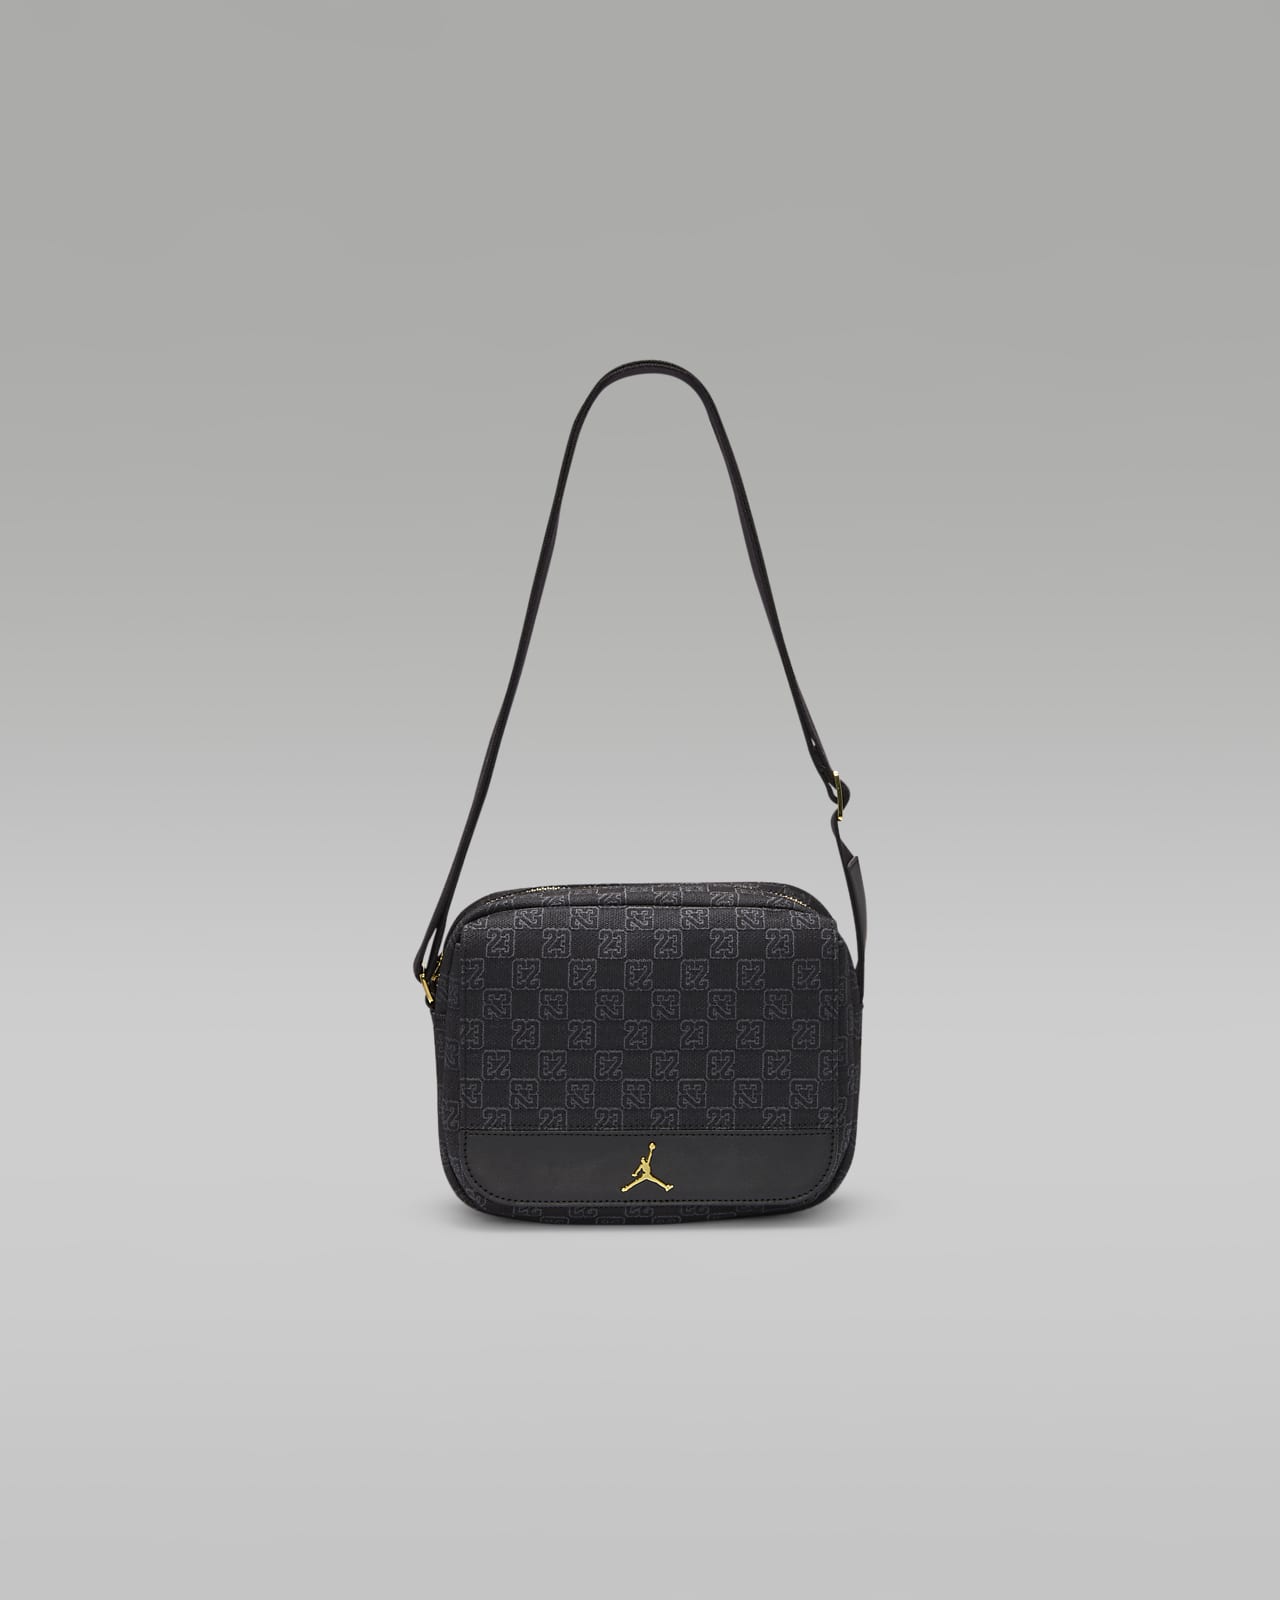 Authentic Louis Vuitton Monogram e Shoulder Cross Body Bag